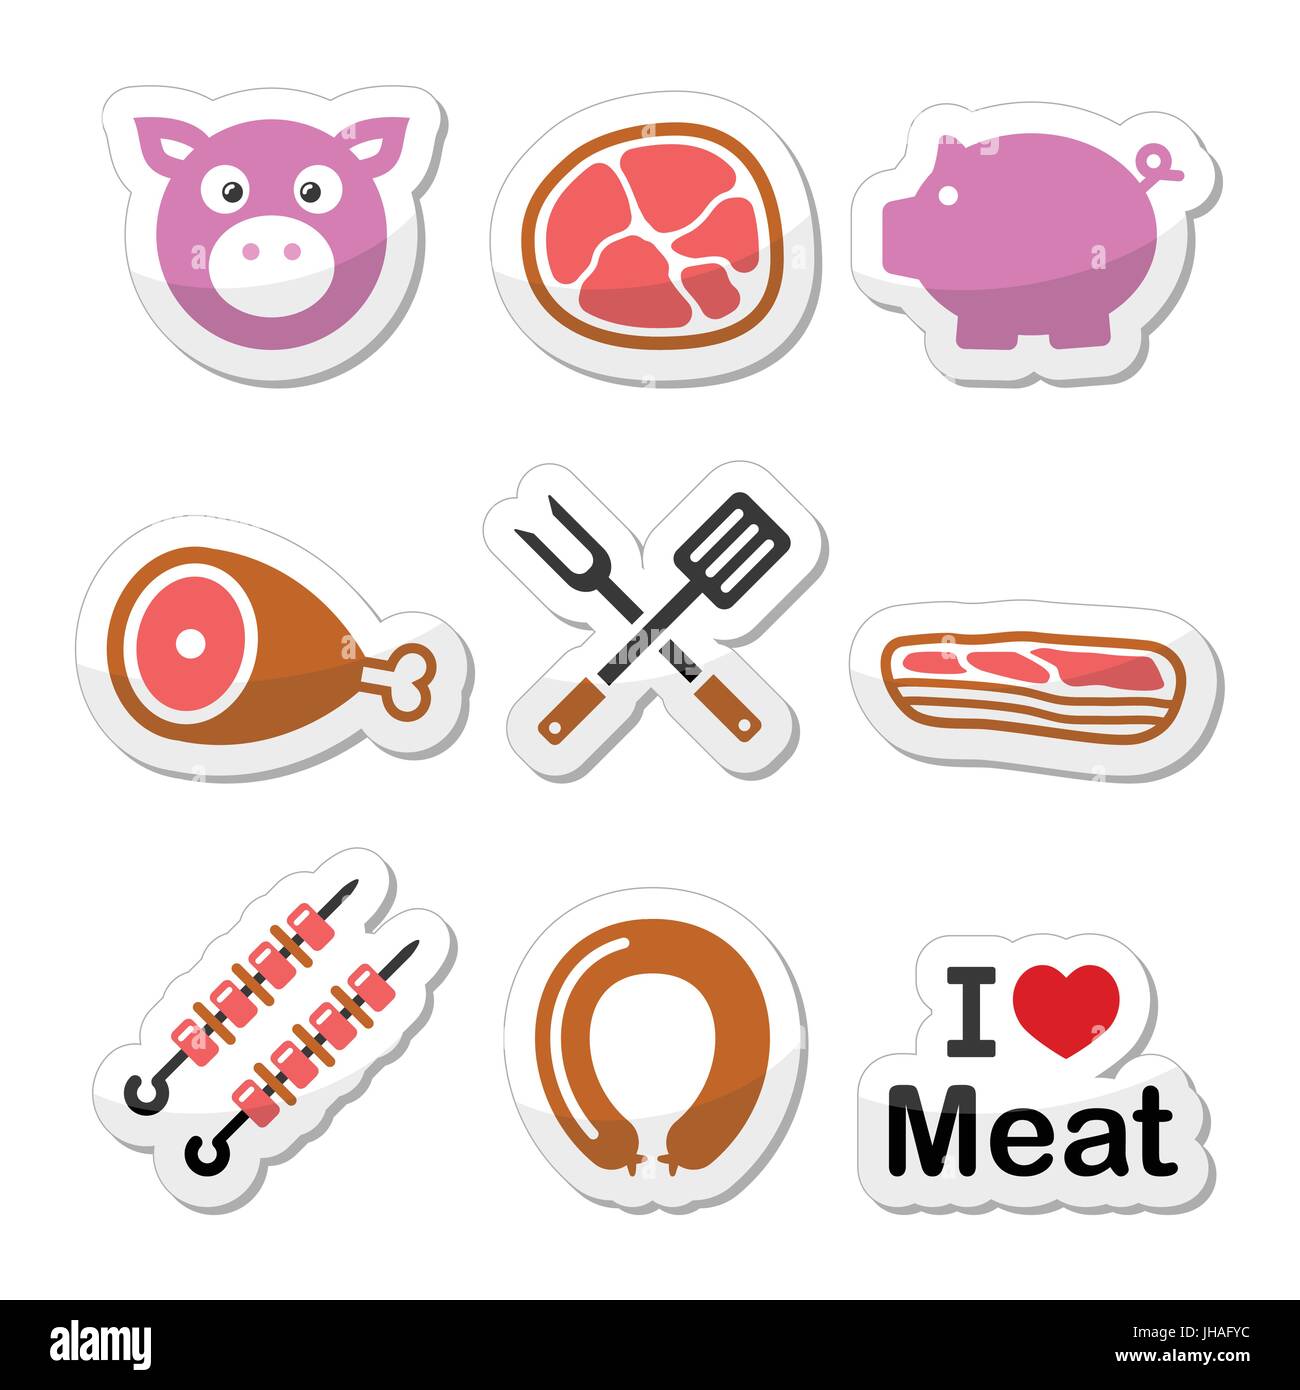 Maiale, carne di maiale - prosciutto e pancetta etichette set di icone colorate vettore alimentare set di icone - carne di maiale isolato su bianco Illustrazione Vettoriale